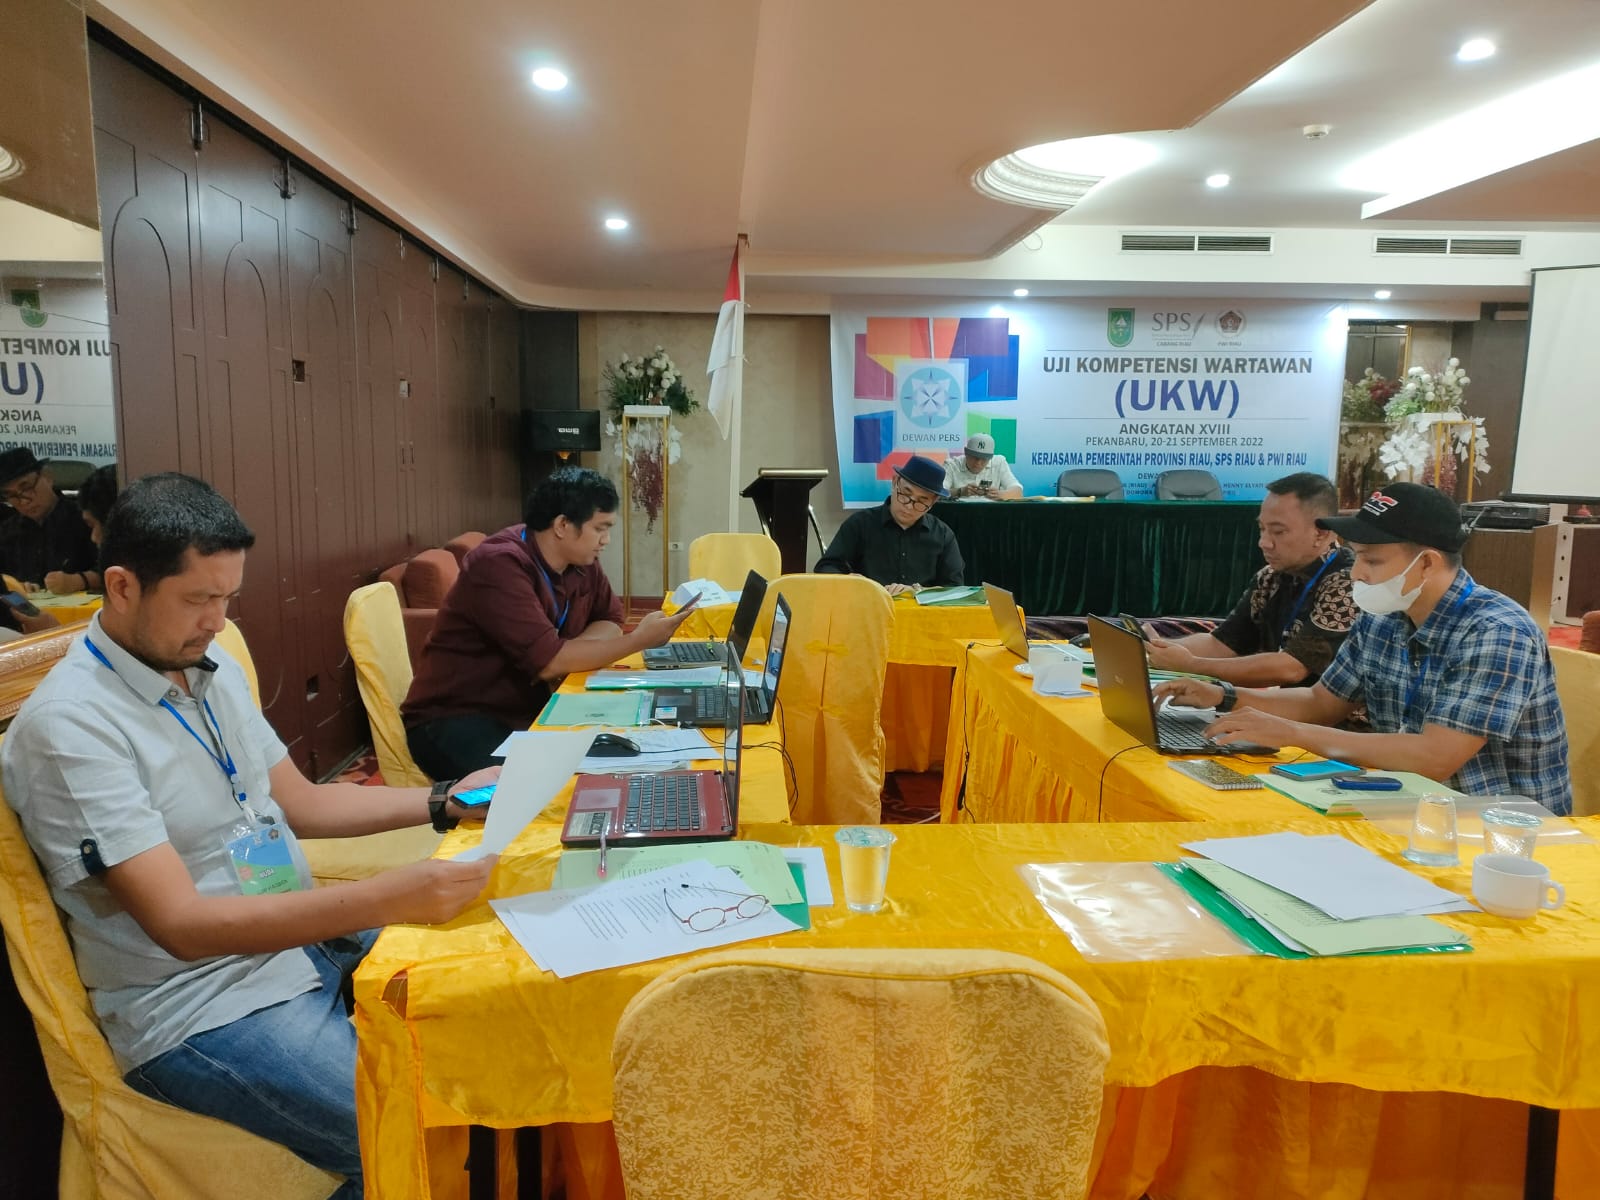 Gratis, Buka 10 Kelas UKW PWI Riau Angkatan XIX Digelar 19-20 Oktober